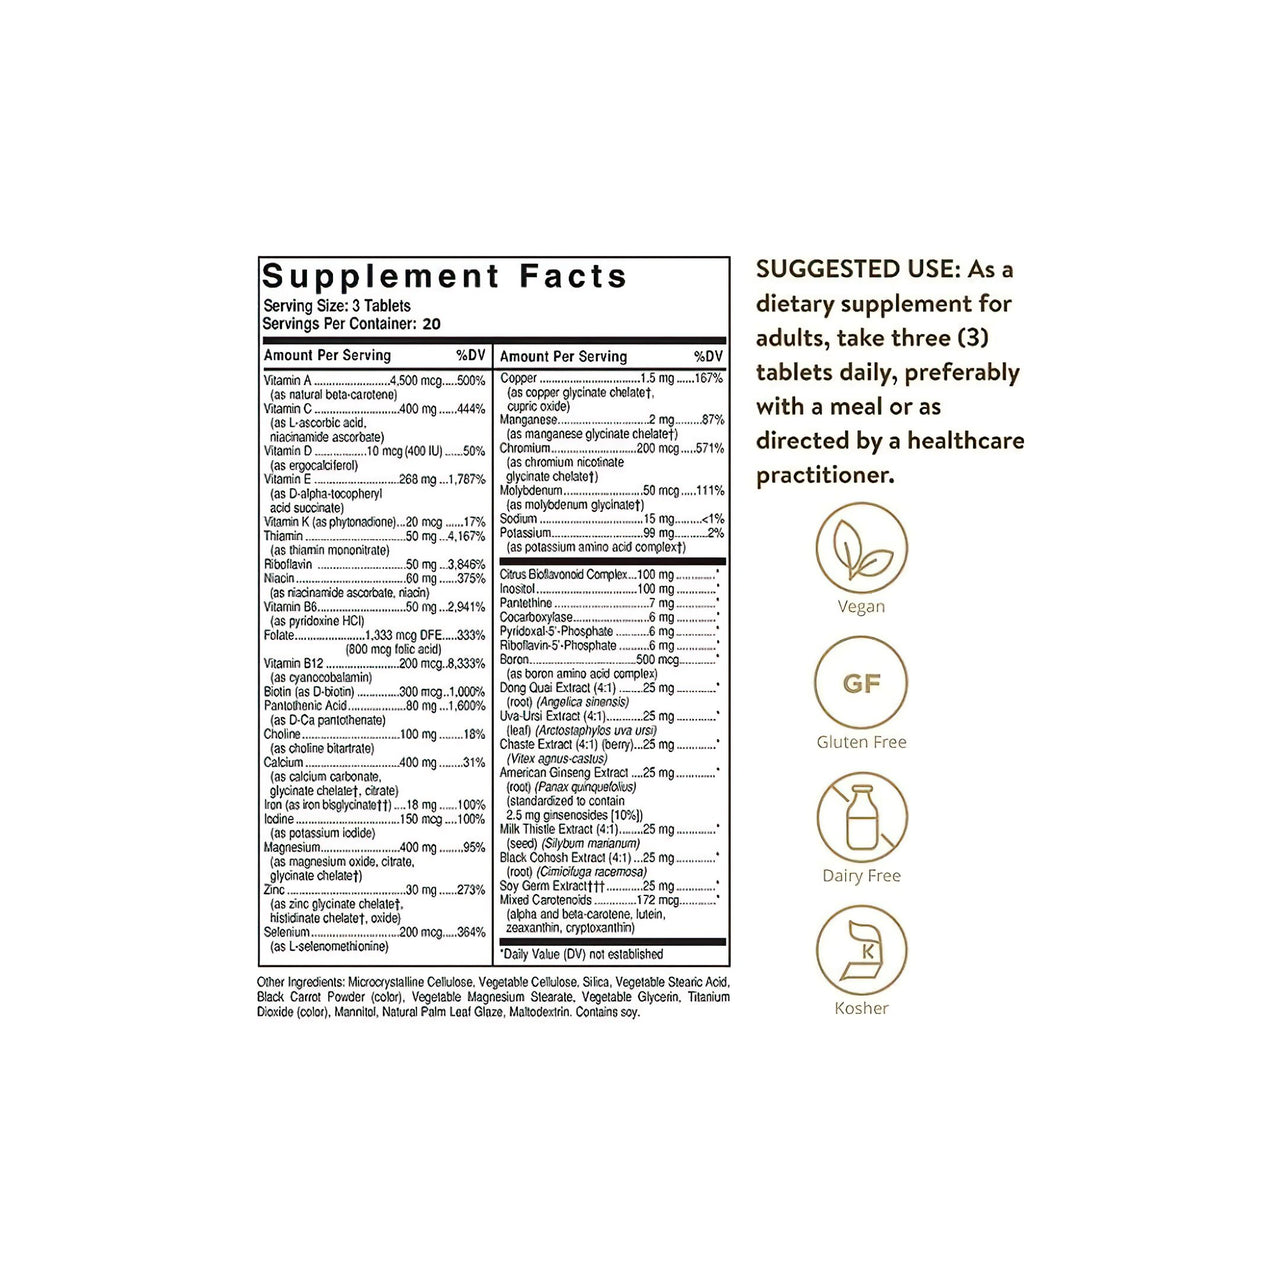 Etiqueta con los ingredientes del suplemento Solgar's Female Multiple 60 Comprimidos.